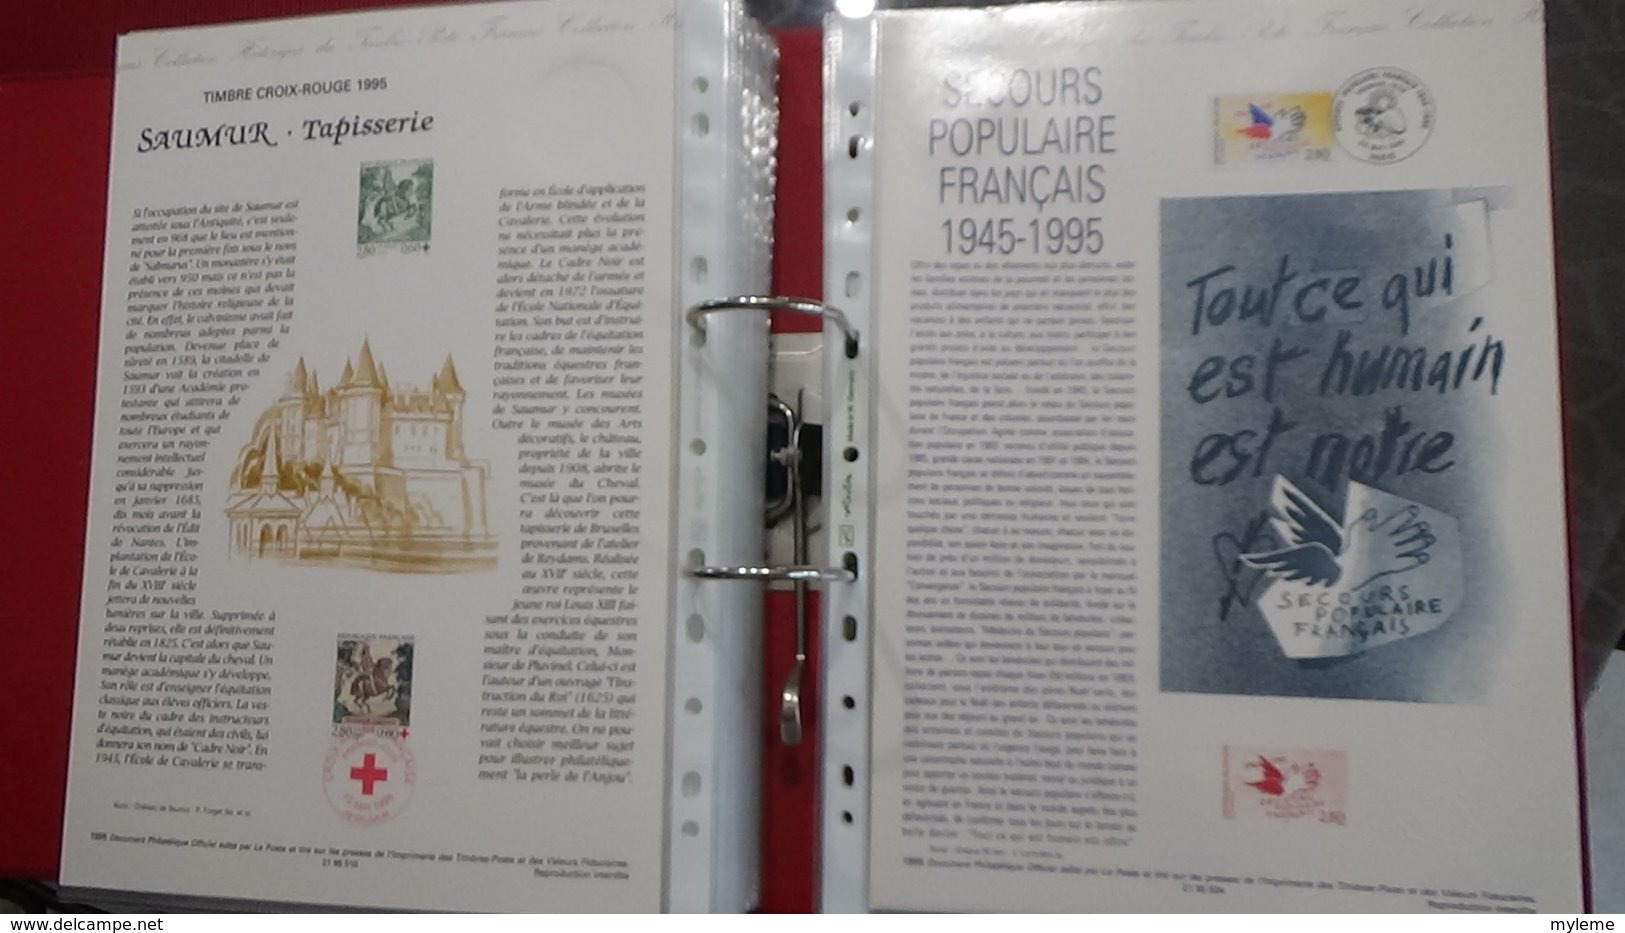 50 Documents philatéliques an 1995 complète (côte 2003 : 508 euros) PORT 8.80 euros COLISSIMO OFFERT (pour la France)